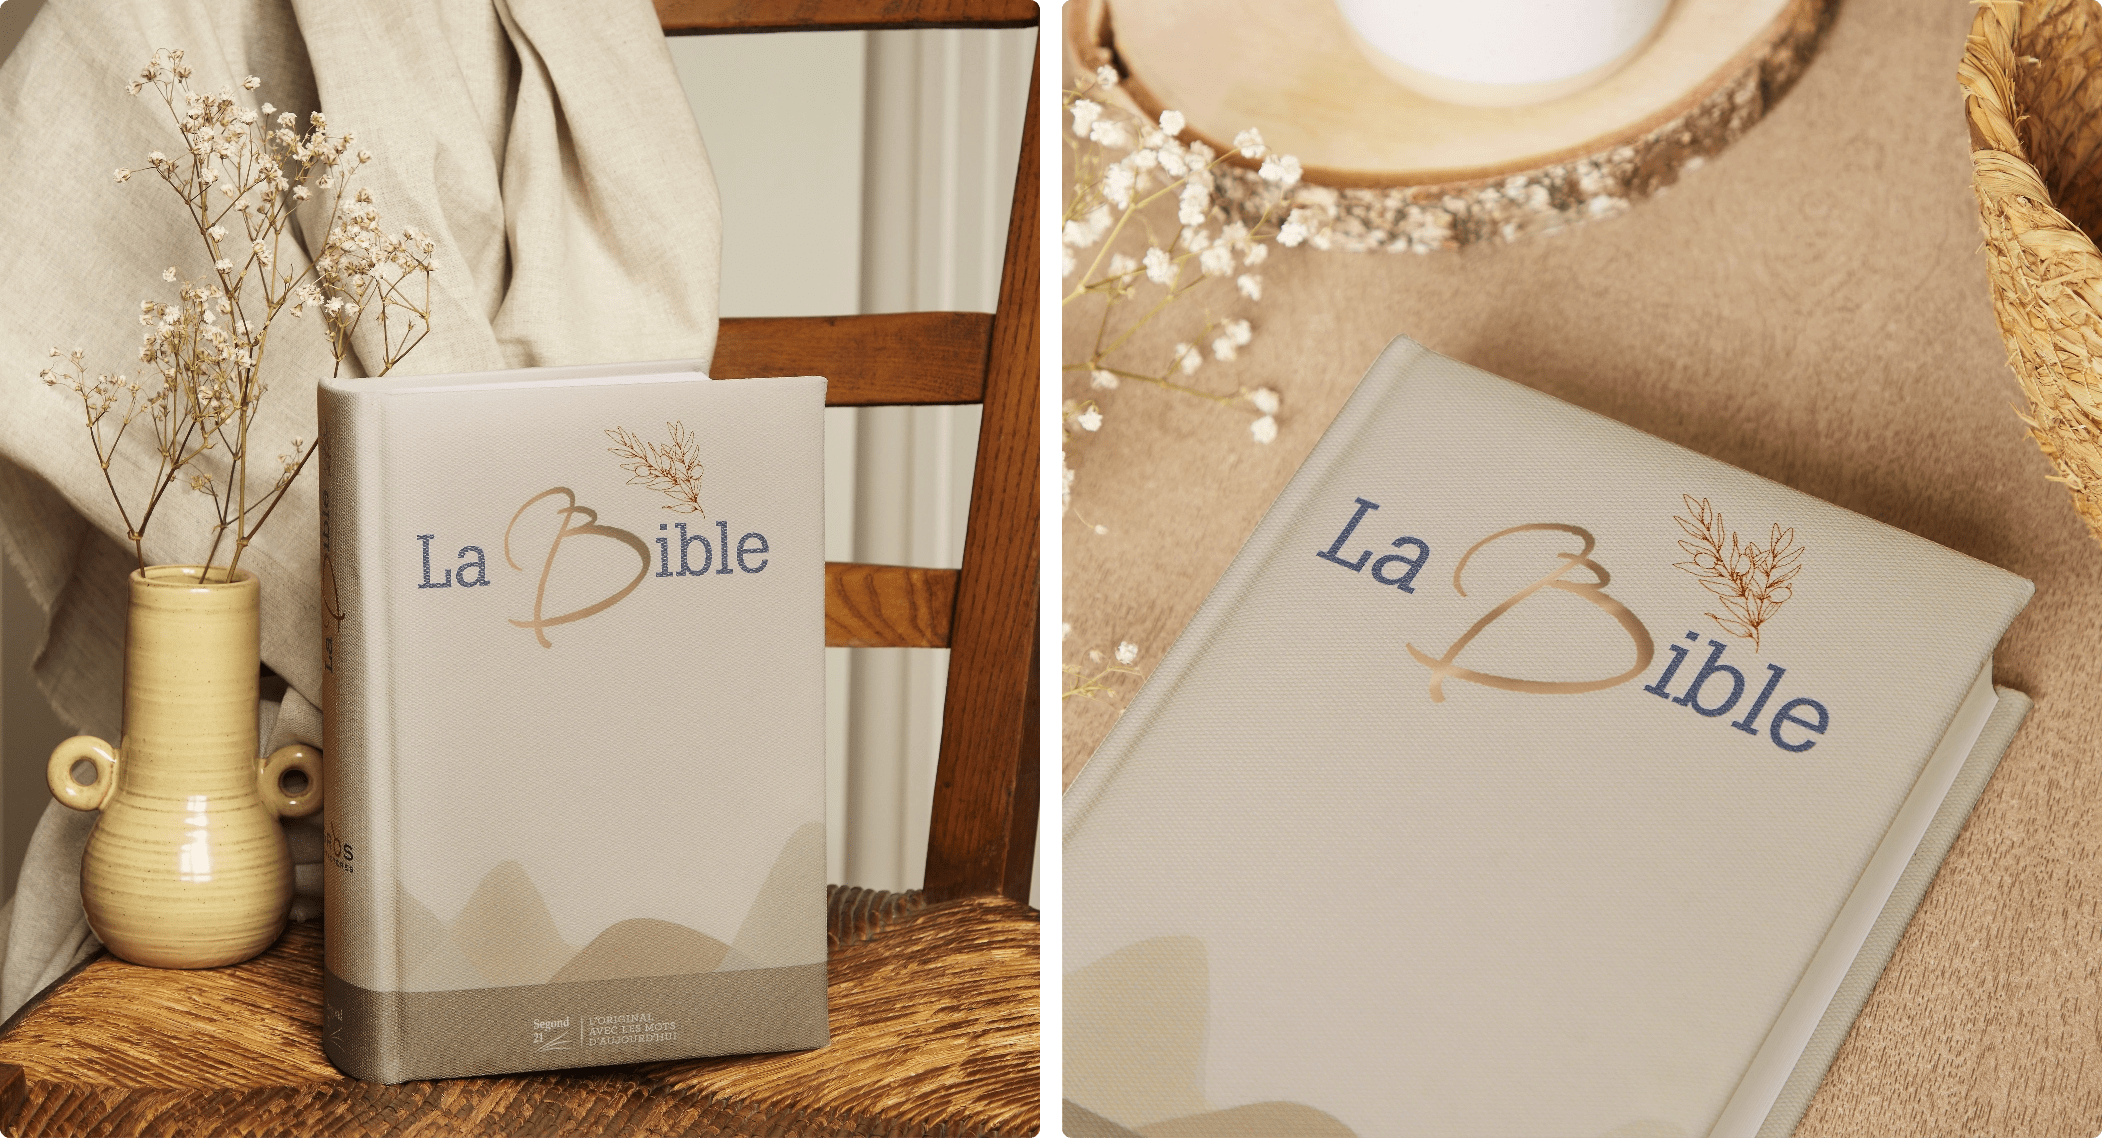 La Bible design by Soeur_co